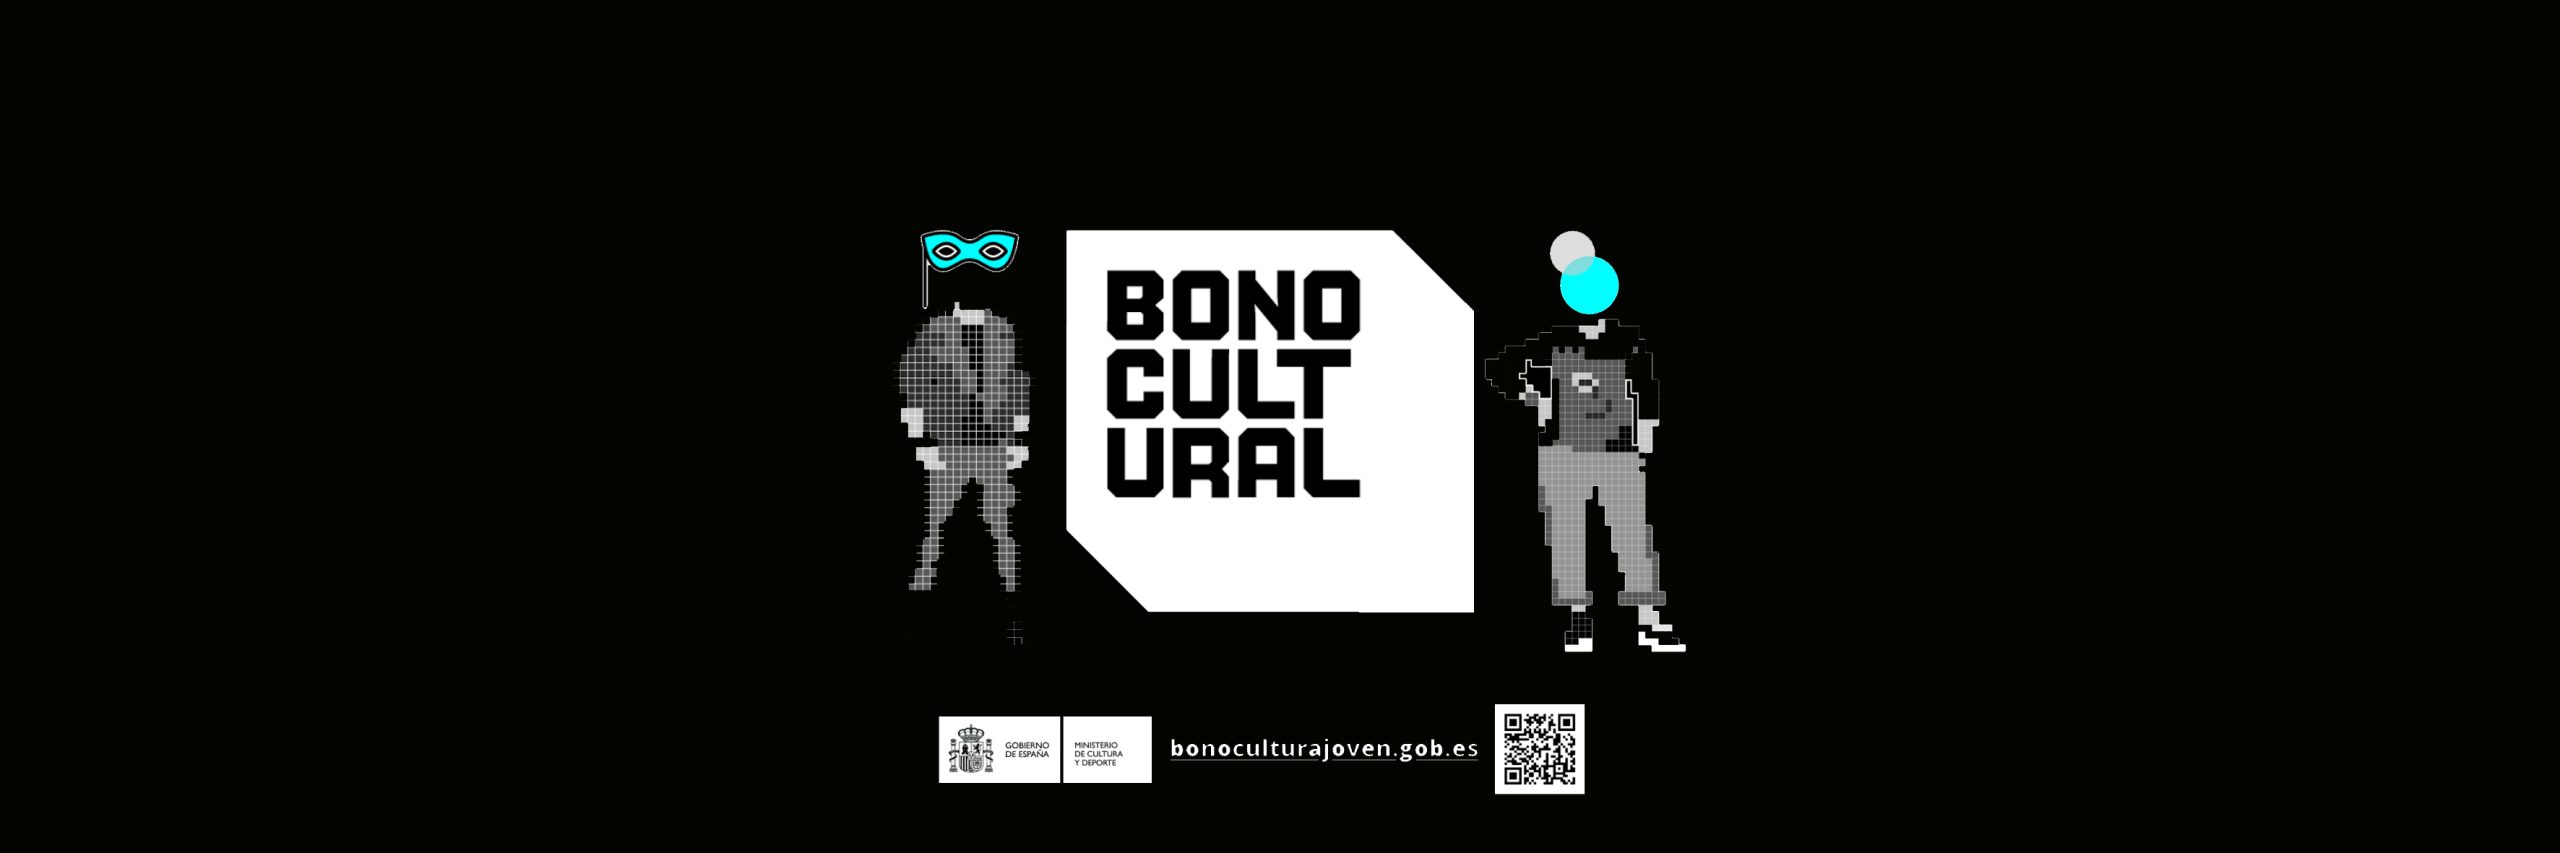 Logo del Bono cultural